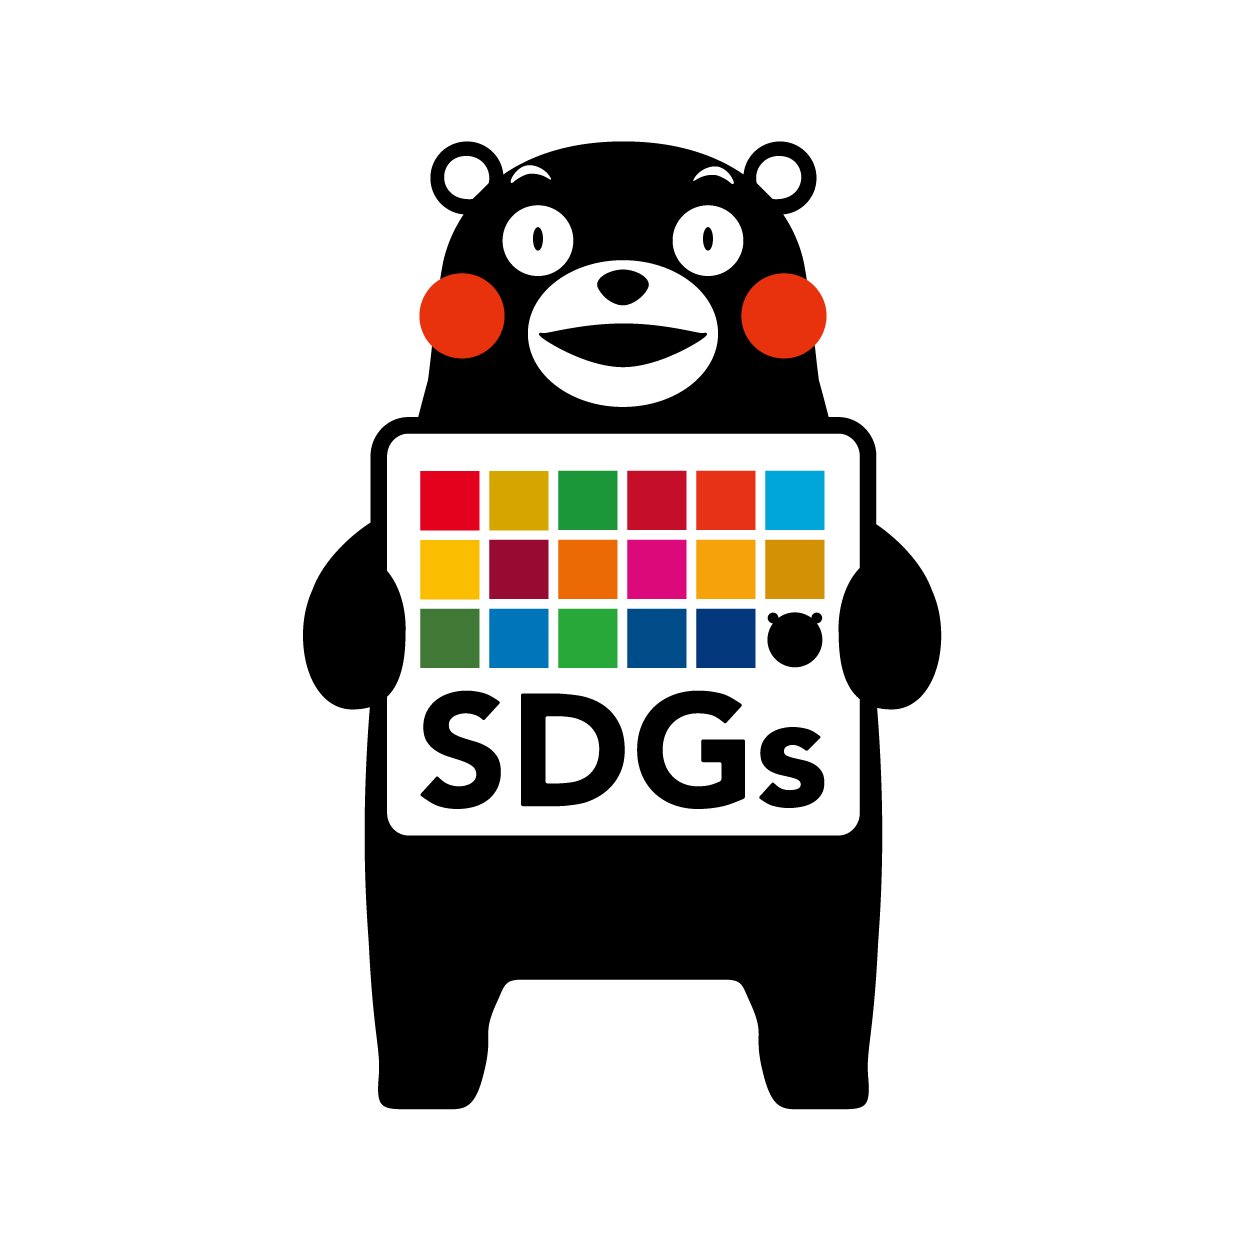 熊本県SDGs登録制度